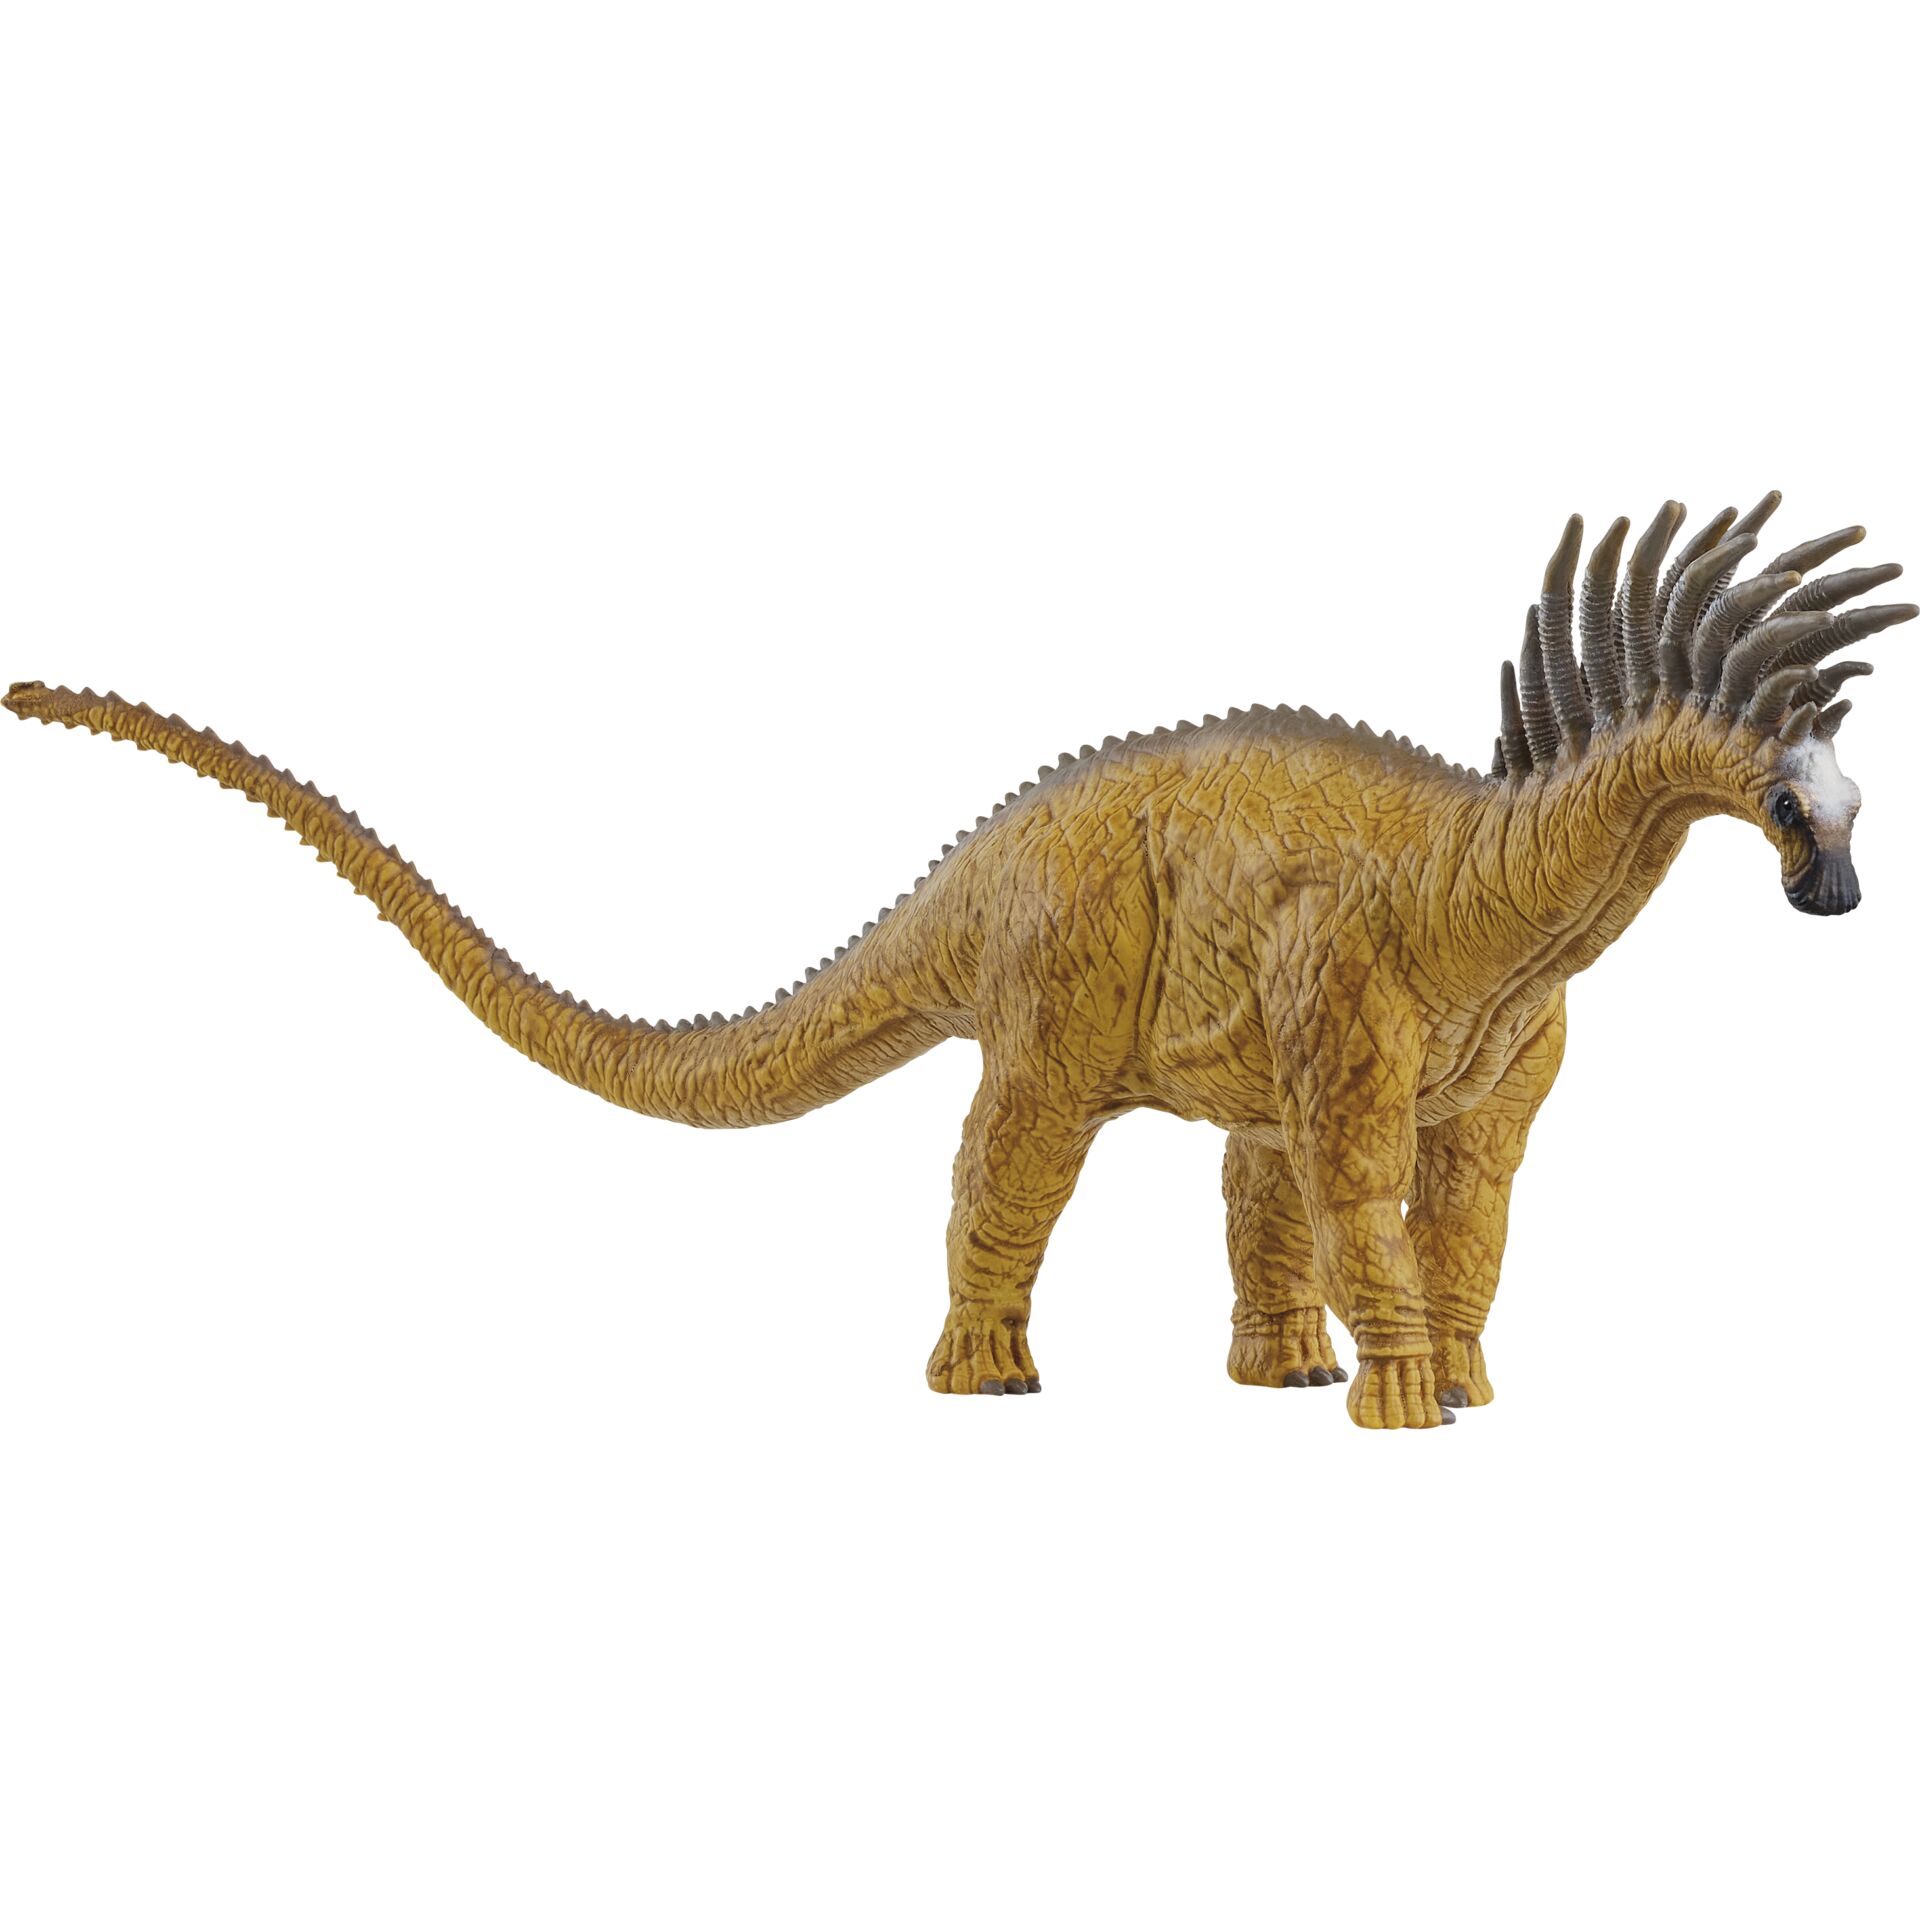 Schleich Dinosaurs         15042 Bajadasaurus